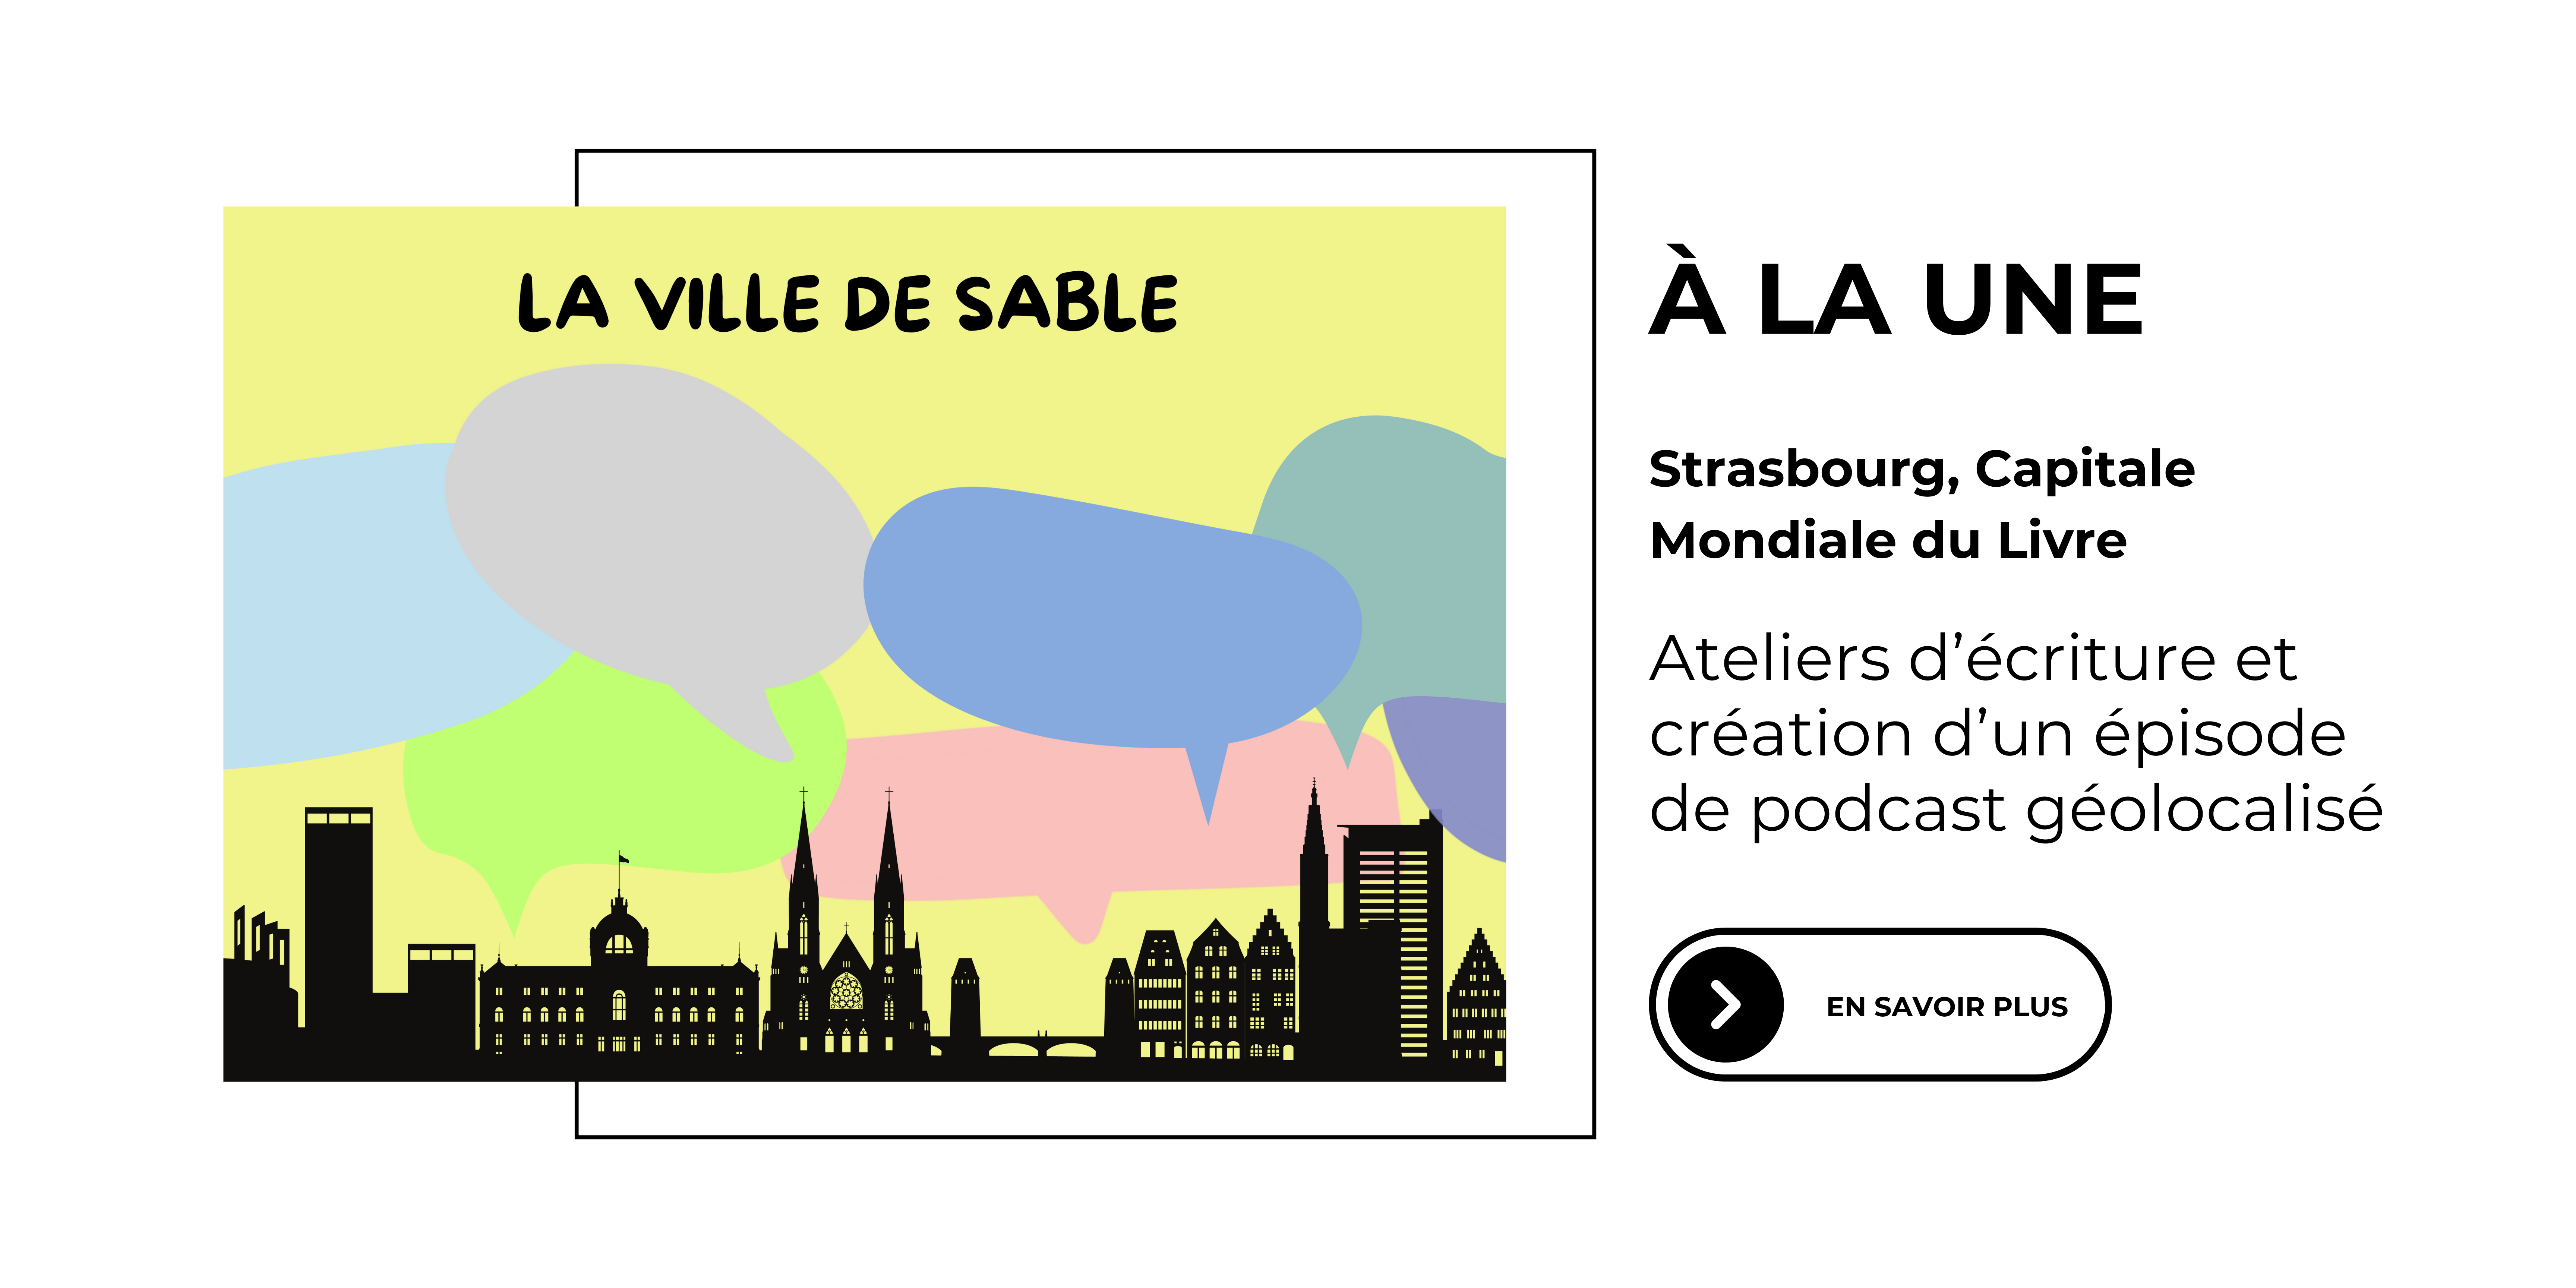 A la une : La Ville de sable - Strasbourg, Capitale Mondiale du Livre